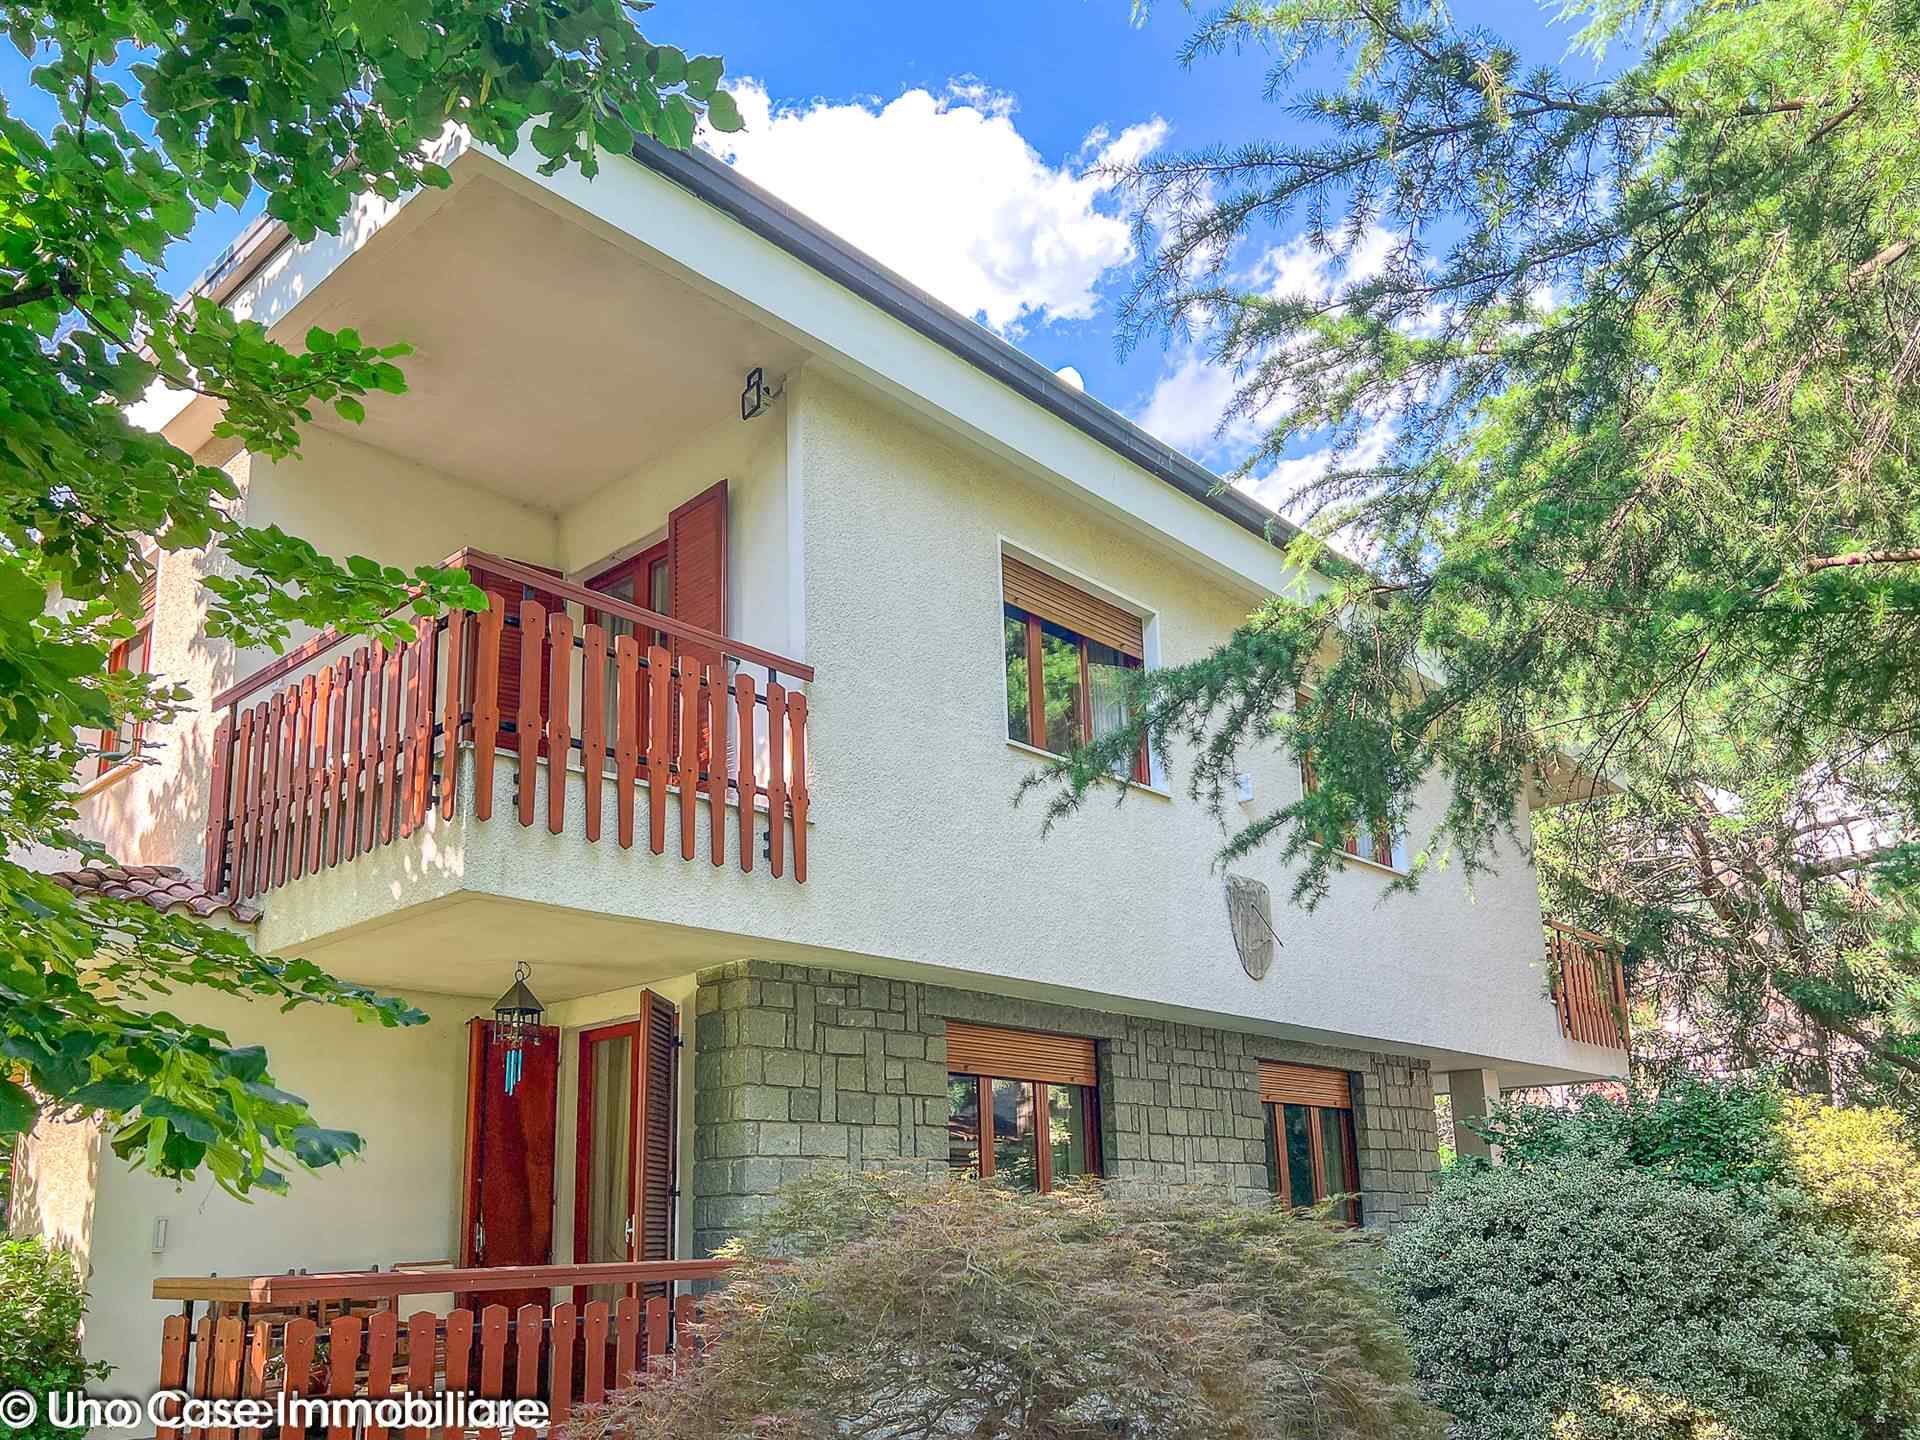 Villa in vendita a Pont-Saint-Martin, 13 locali, prezzo € 495.000 | CambioCasa.it